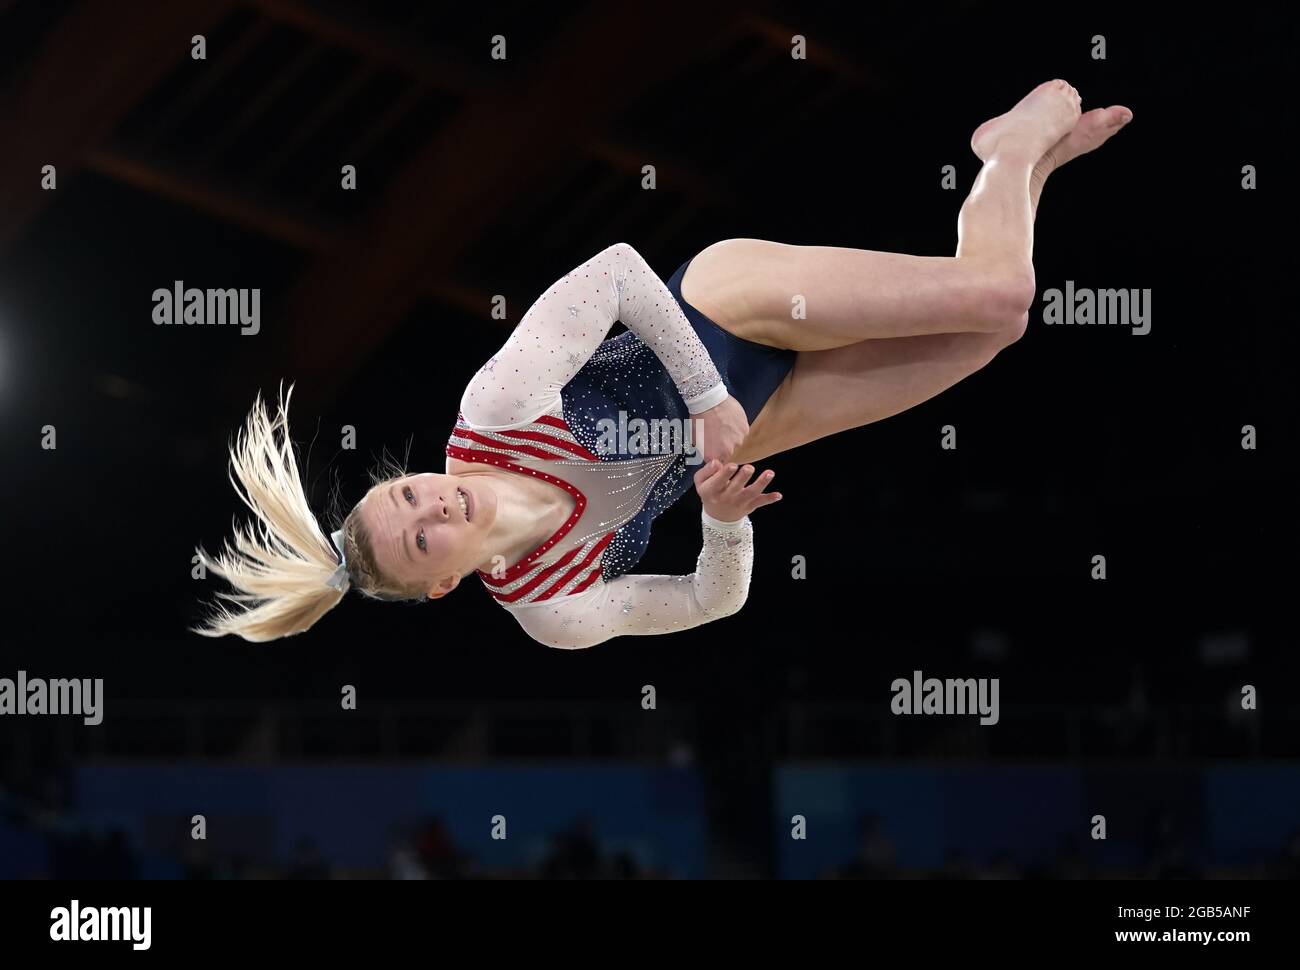 (210802) -- TOKYO, 2 août 2021 (Xinhua) -- Jade Carey des États-Unis participe à la finale de l'exercice de gymnastique artistique féminin aux Jeux Olympiques de Tokyo 2020 à Tokyo, au Japon, le 2 août 2021. (Xinhua/Cheng min) Banque D'Images